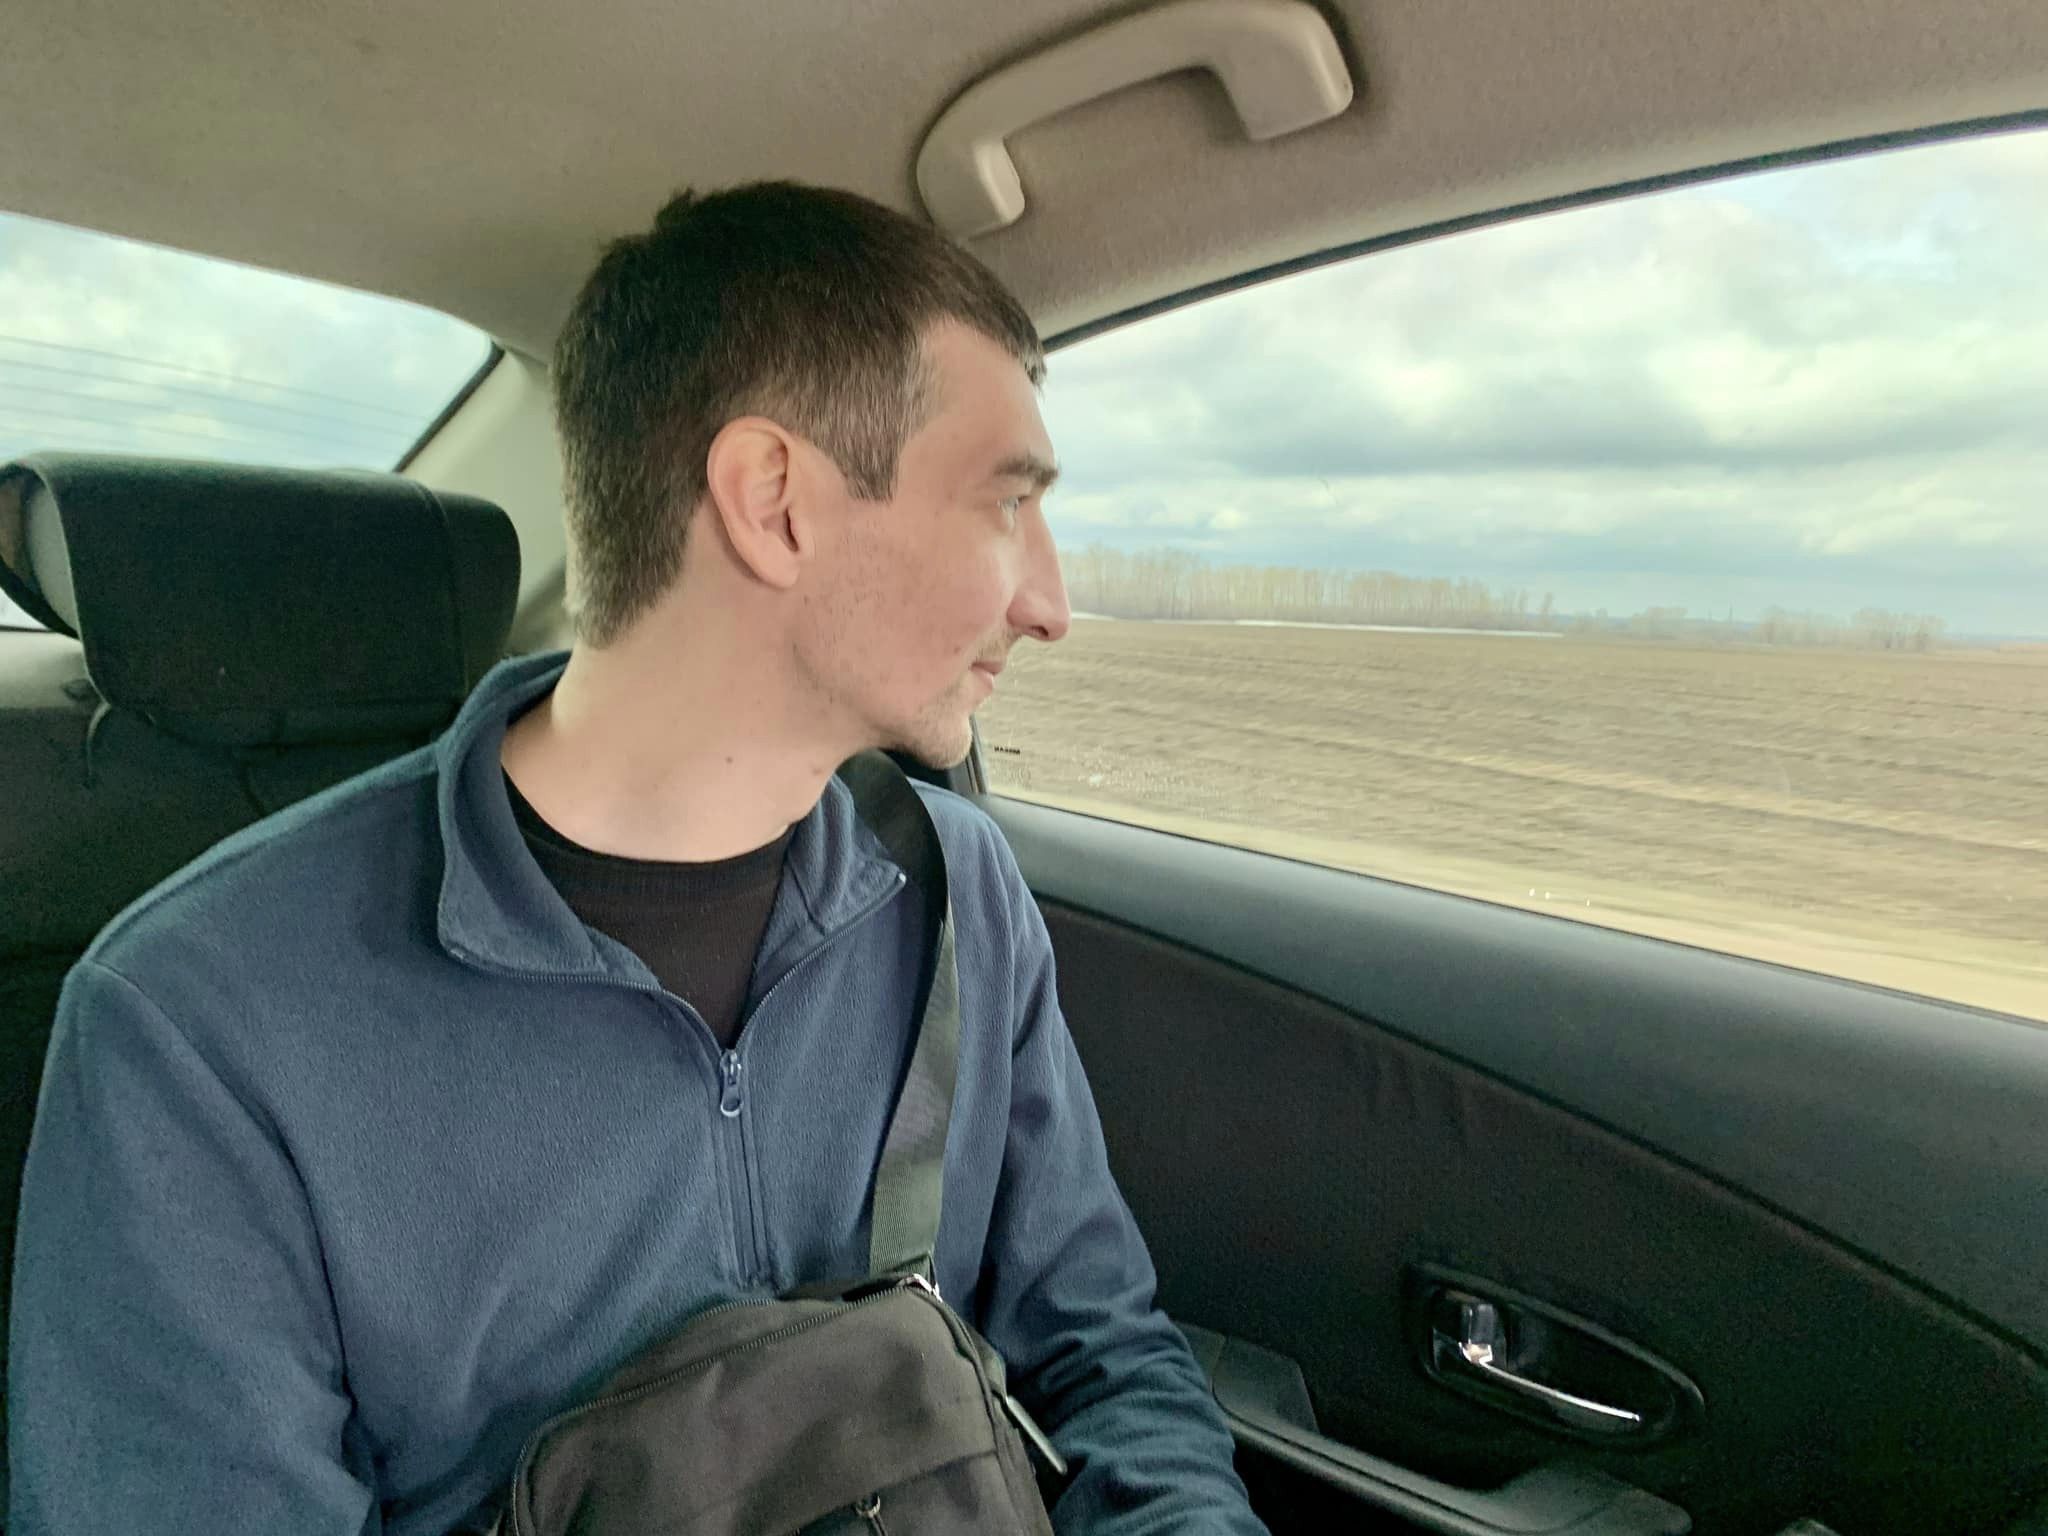 Вийшов на свободу кримський політв'язень Кремля Рефат Алімов